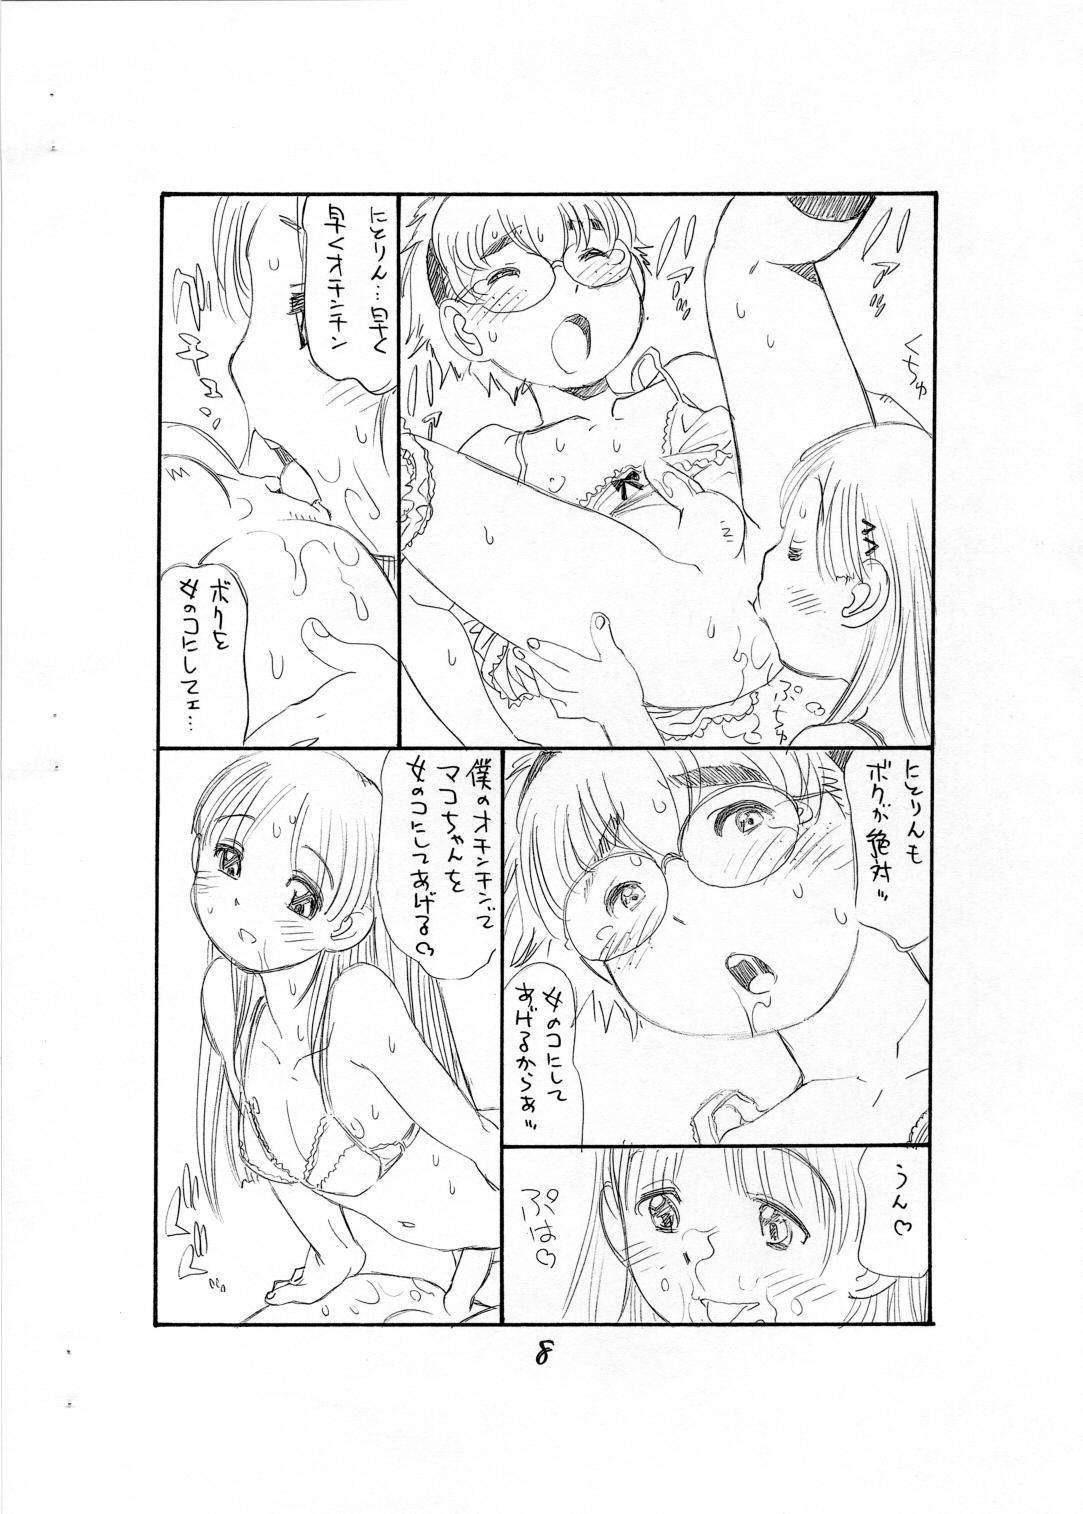 Anal Licking Bokutachi Otokonoko - Hourou musuko Homosexual - Page 10